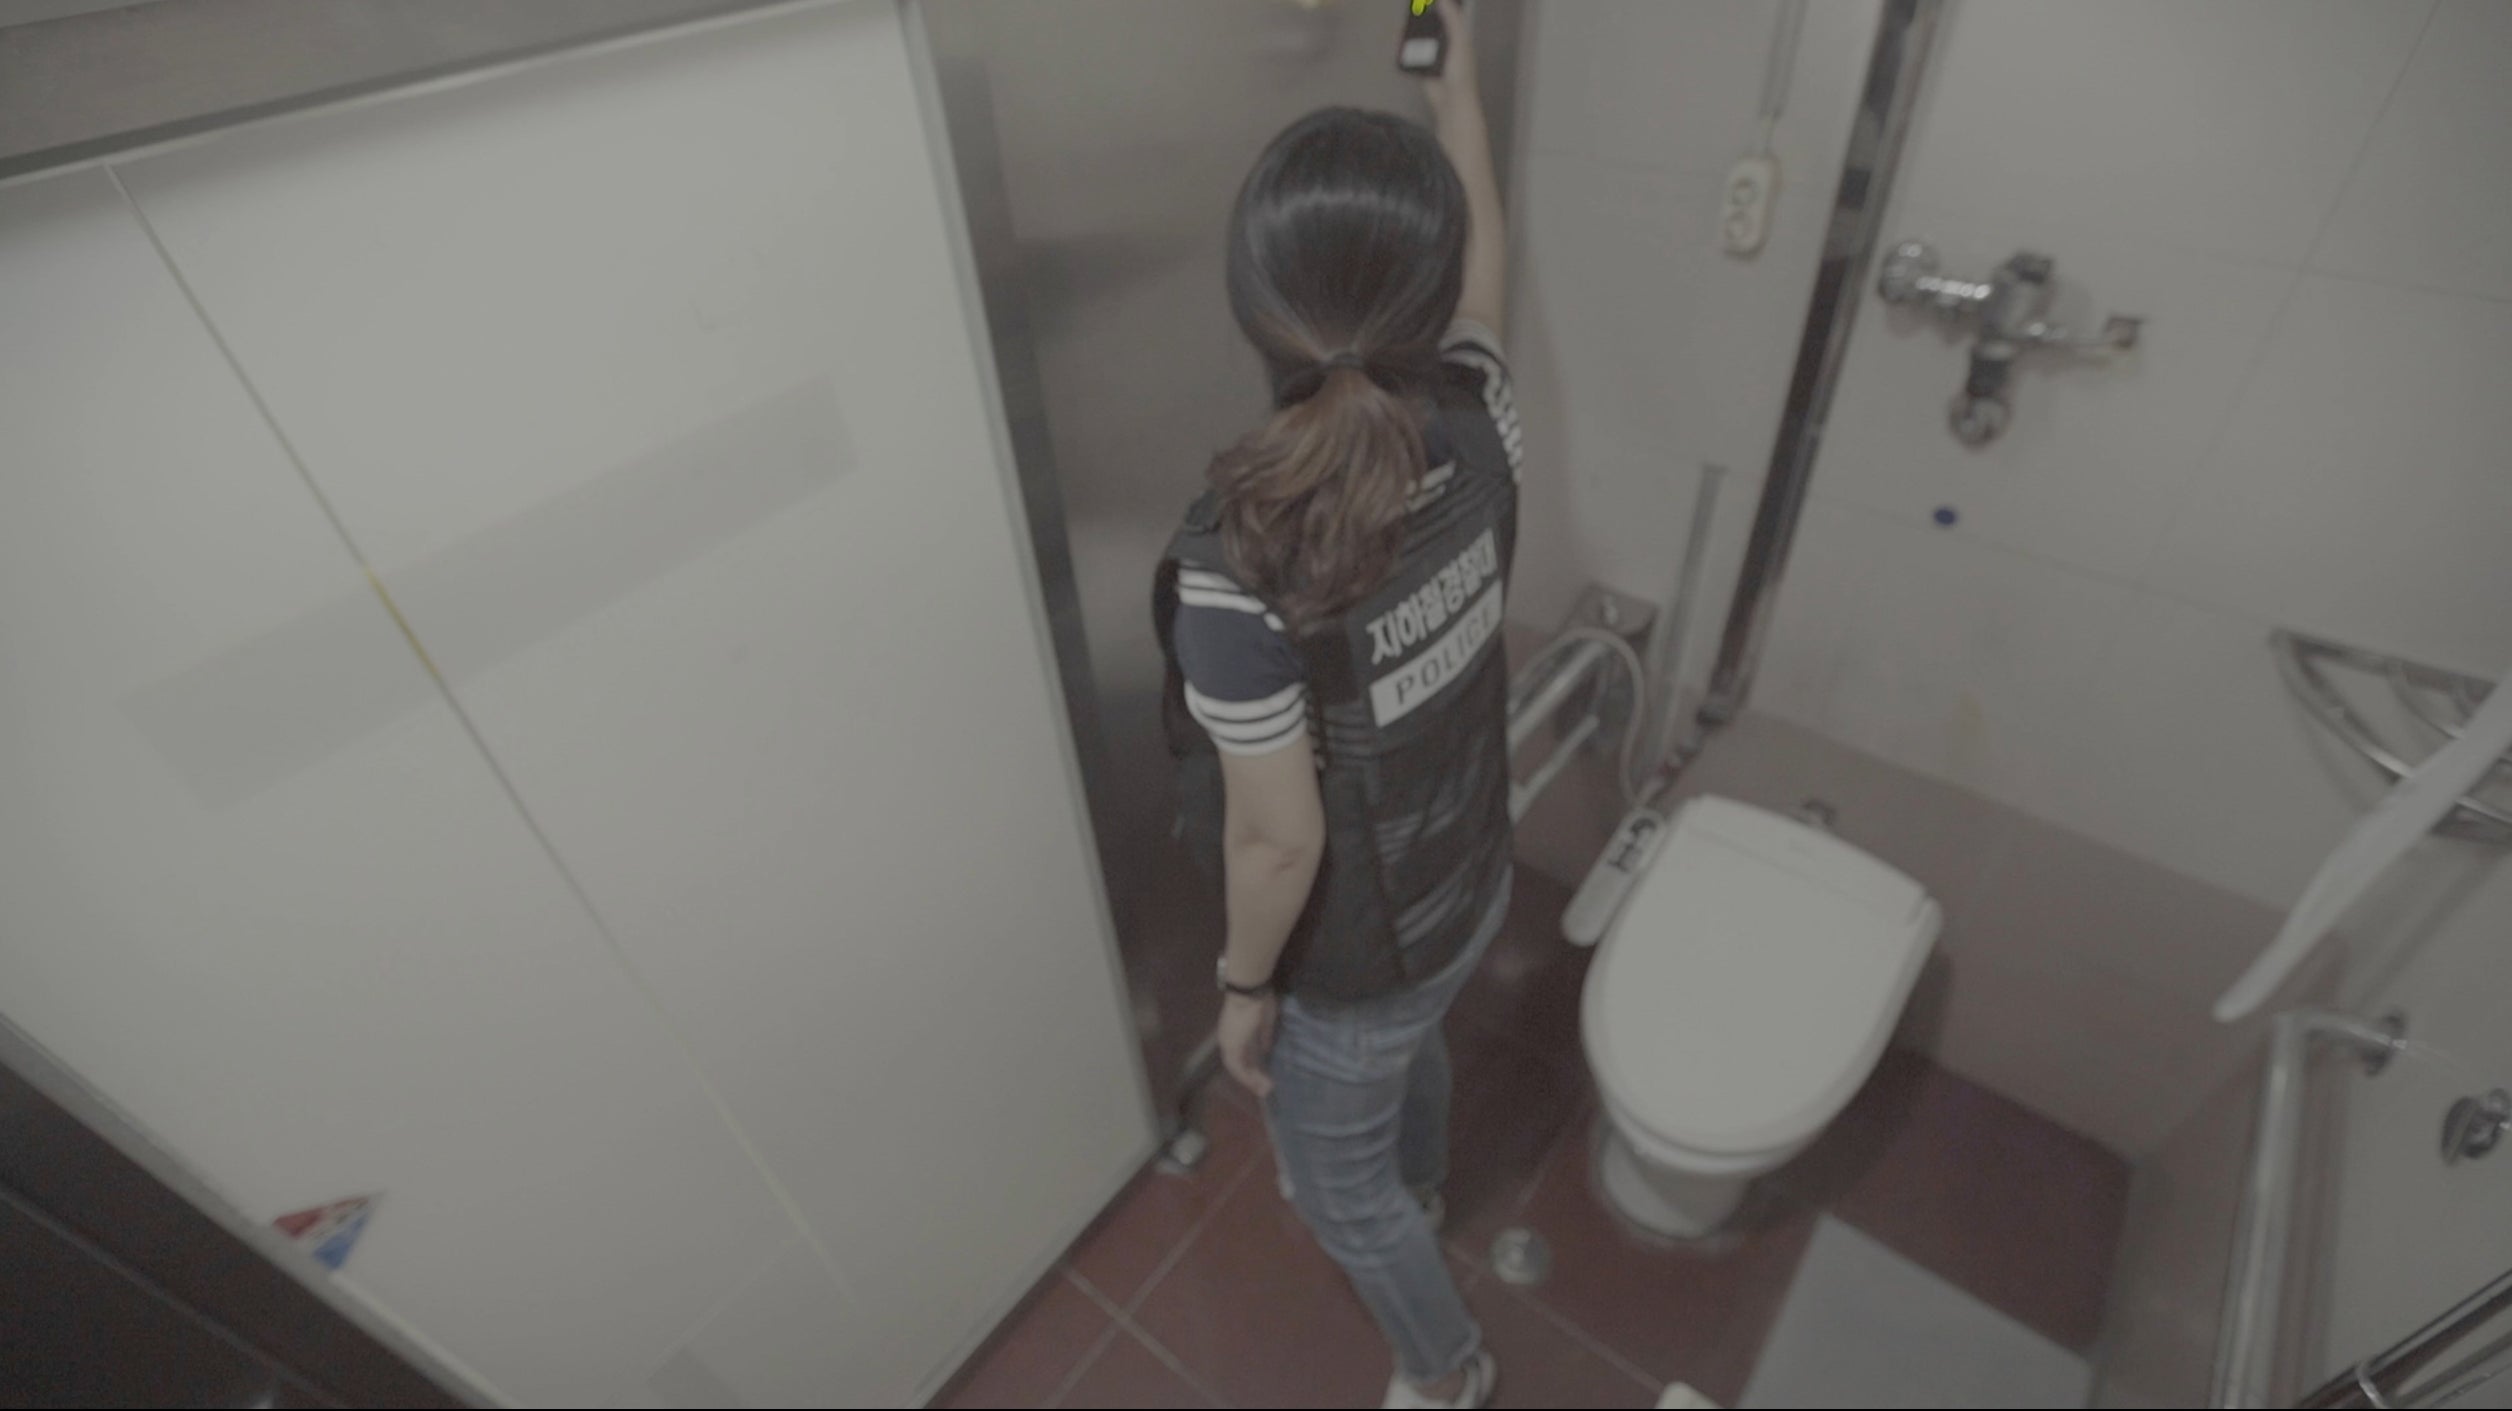 Spy2wc_07 - ссущие женщины в общественном туалете